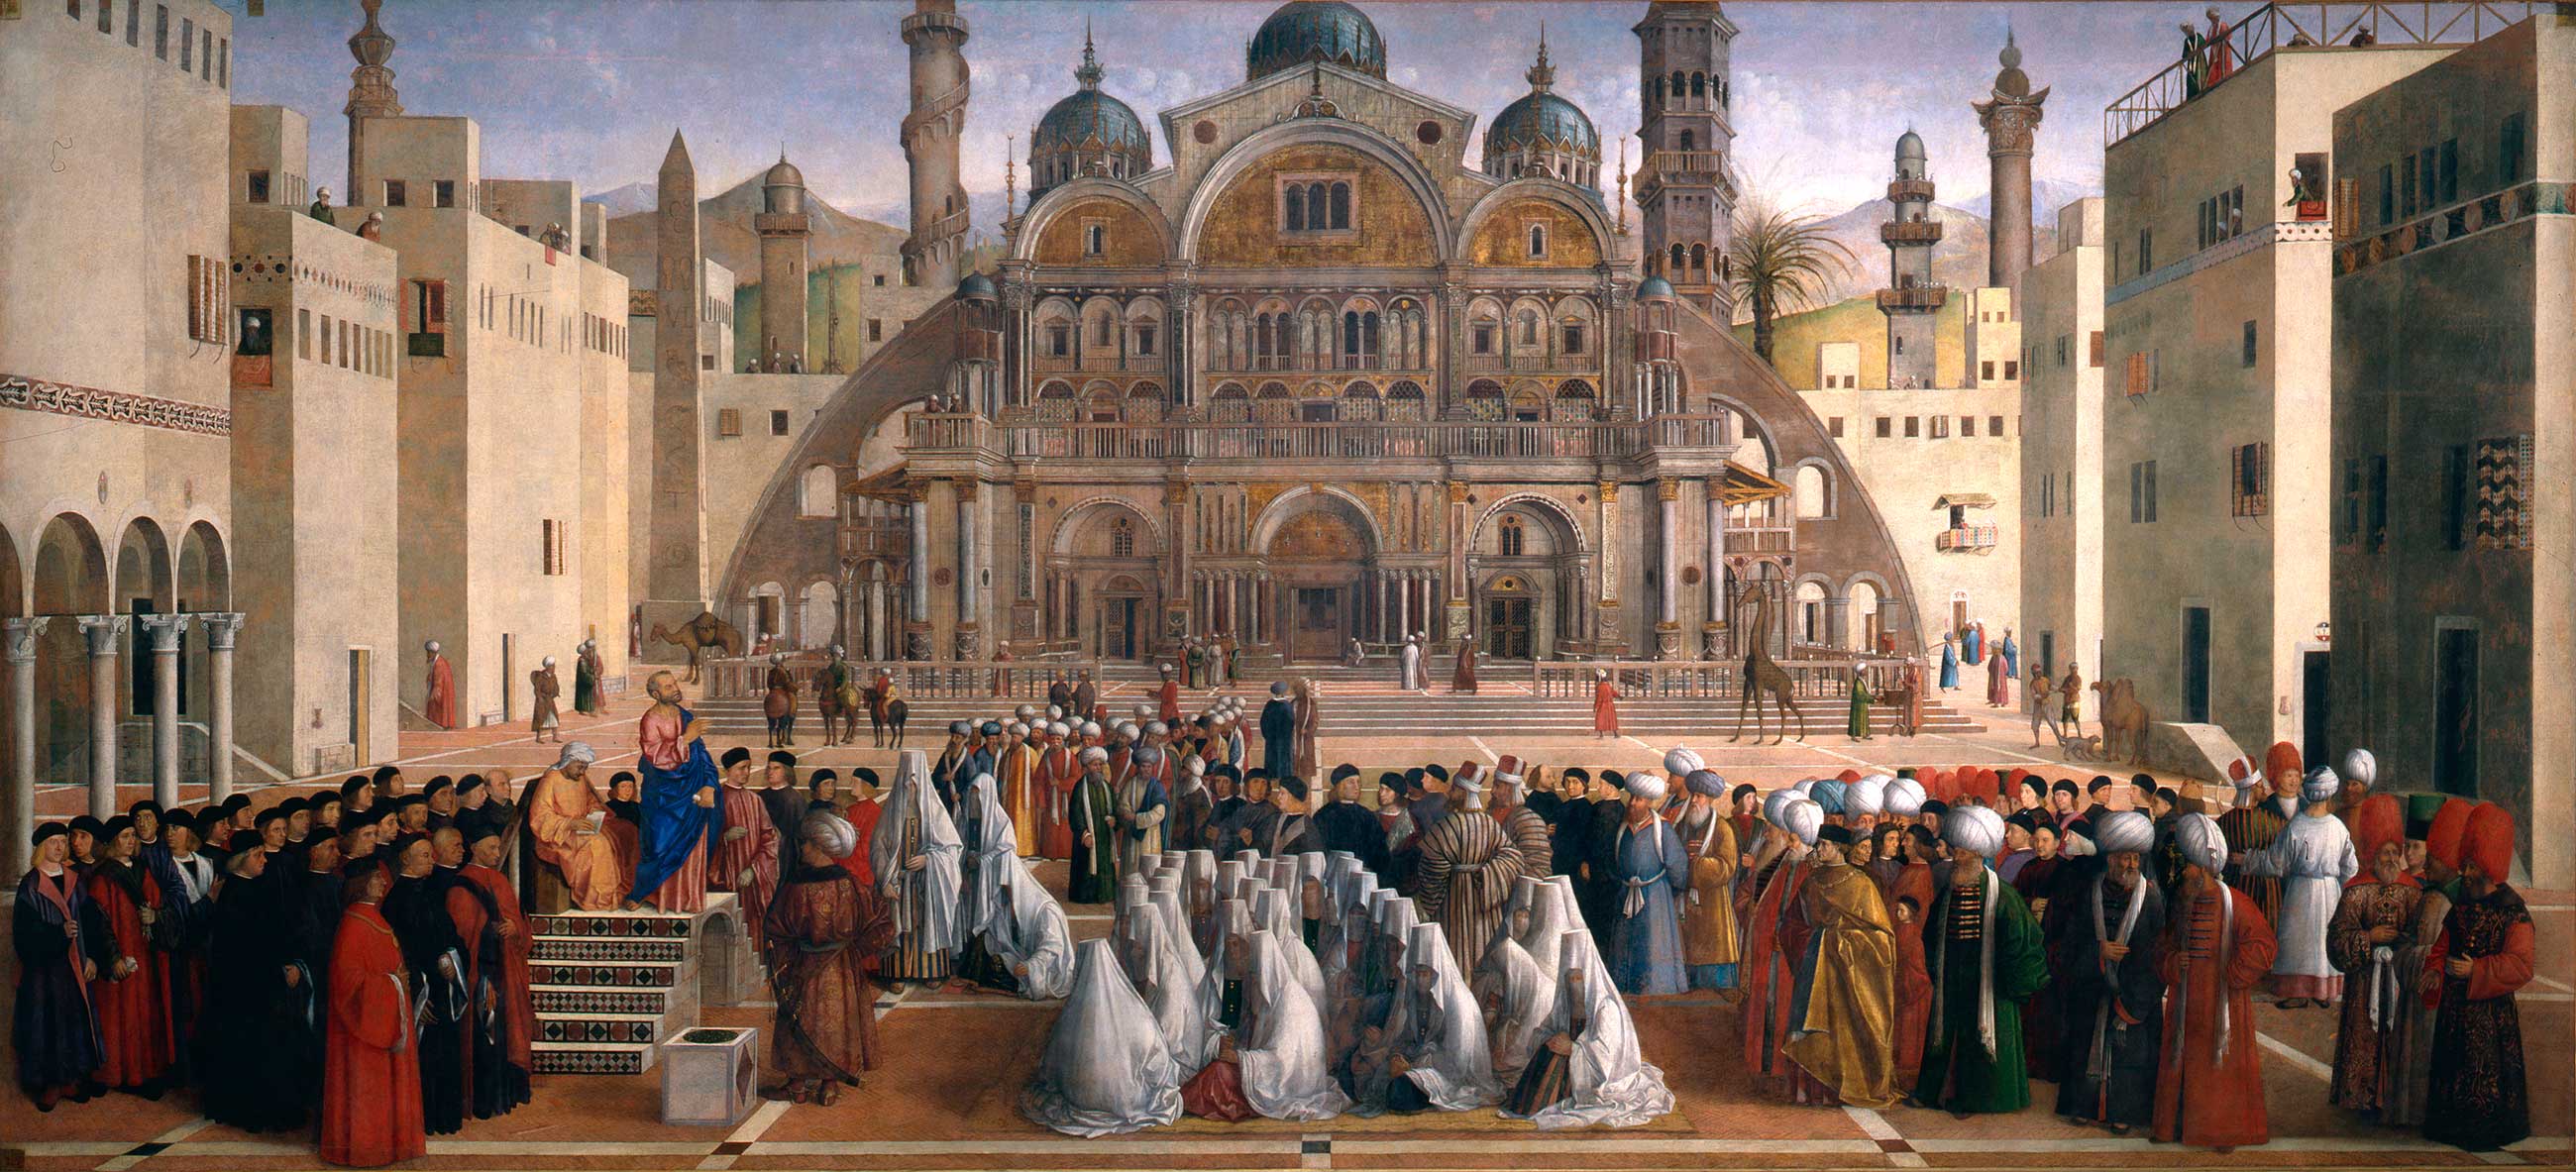 Szent Márk prédikációja Alexandriában by Gentile Bellini and Giovanni Bellini - 1504-07 - 347 × 770 cm 